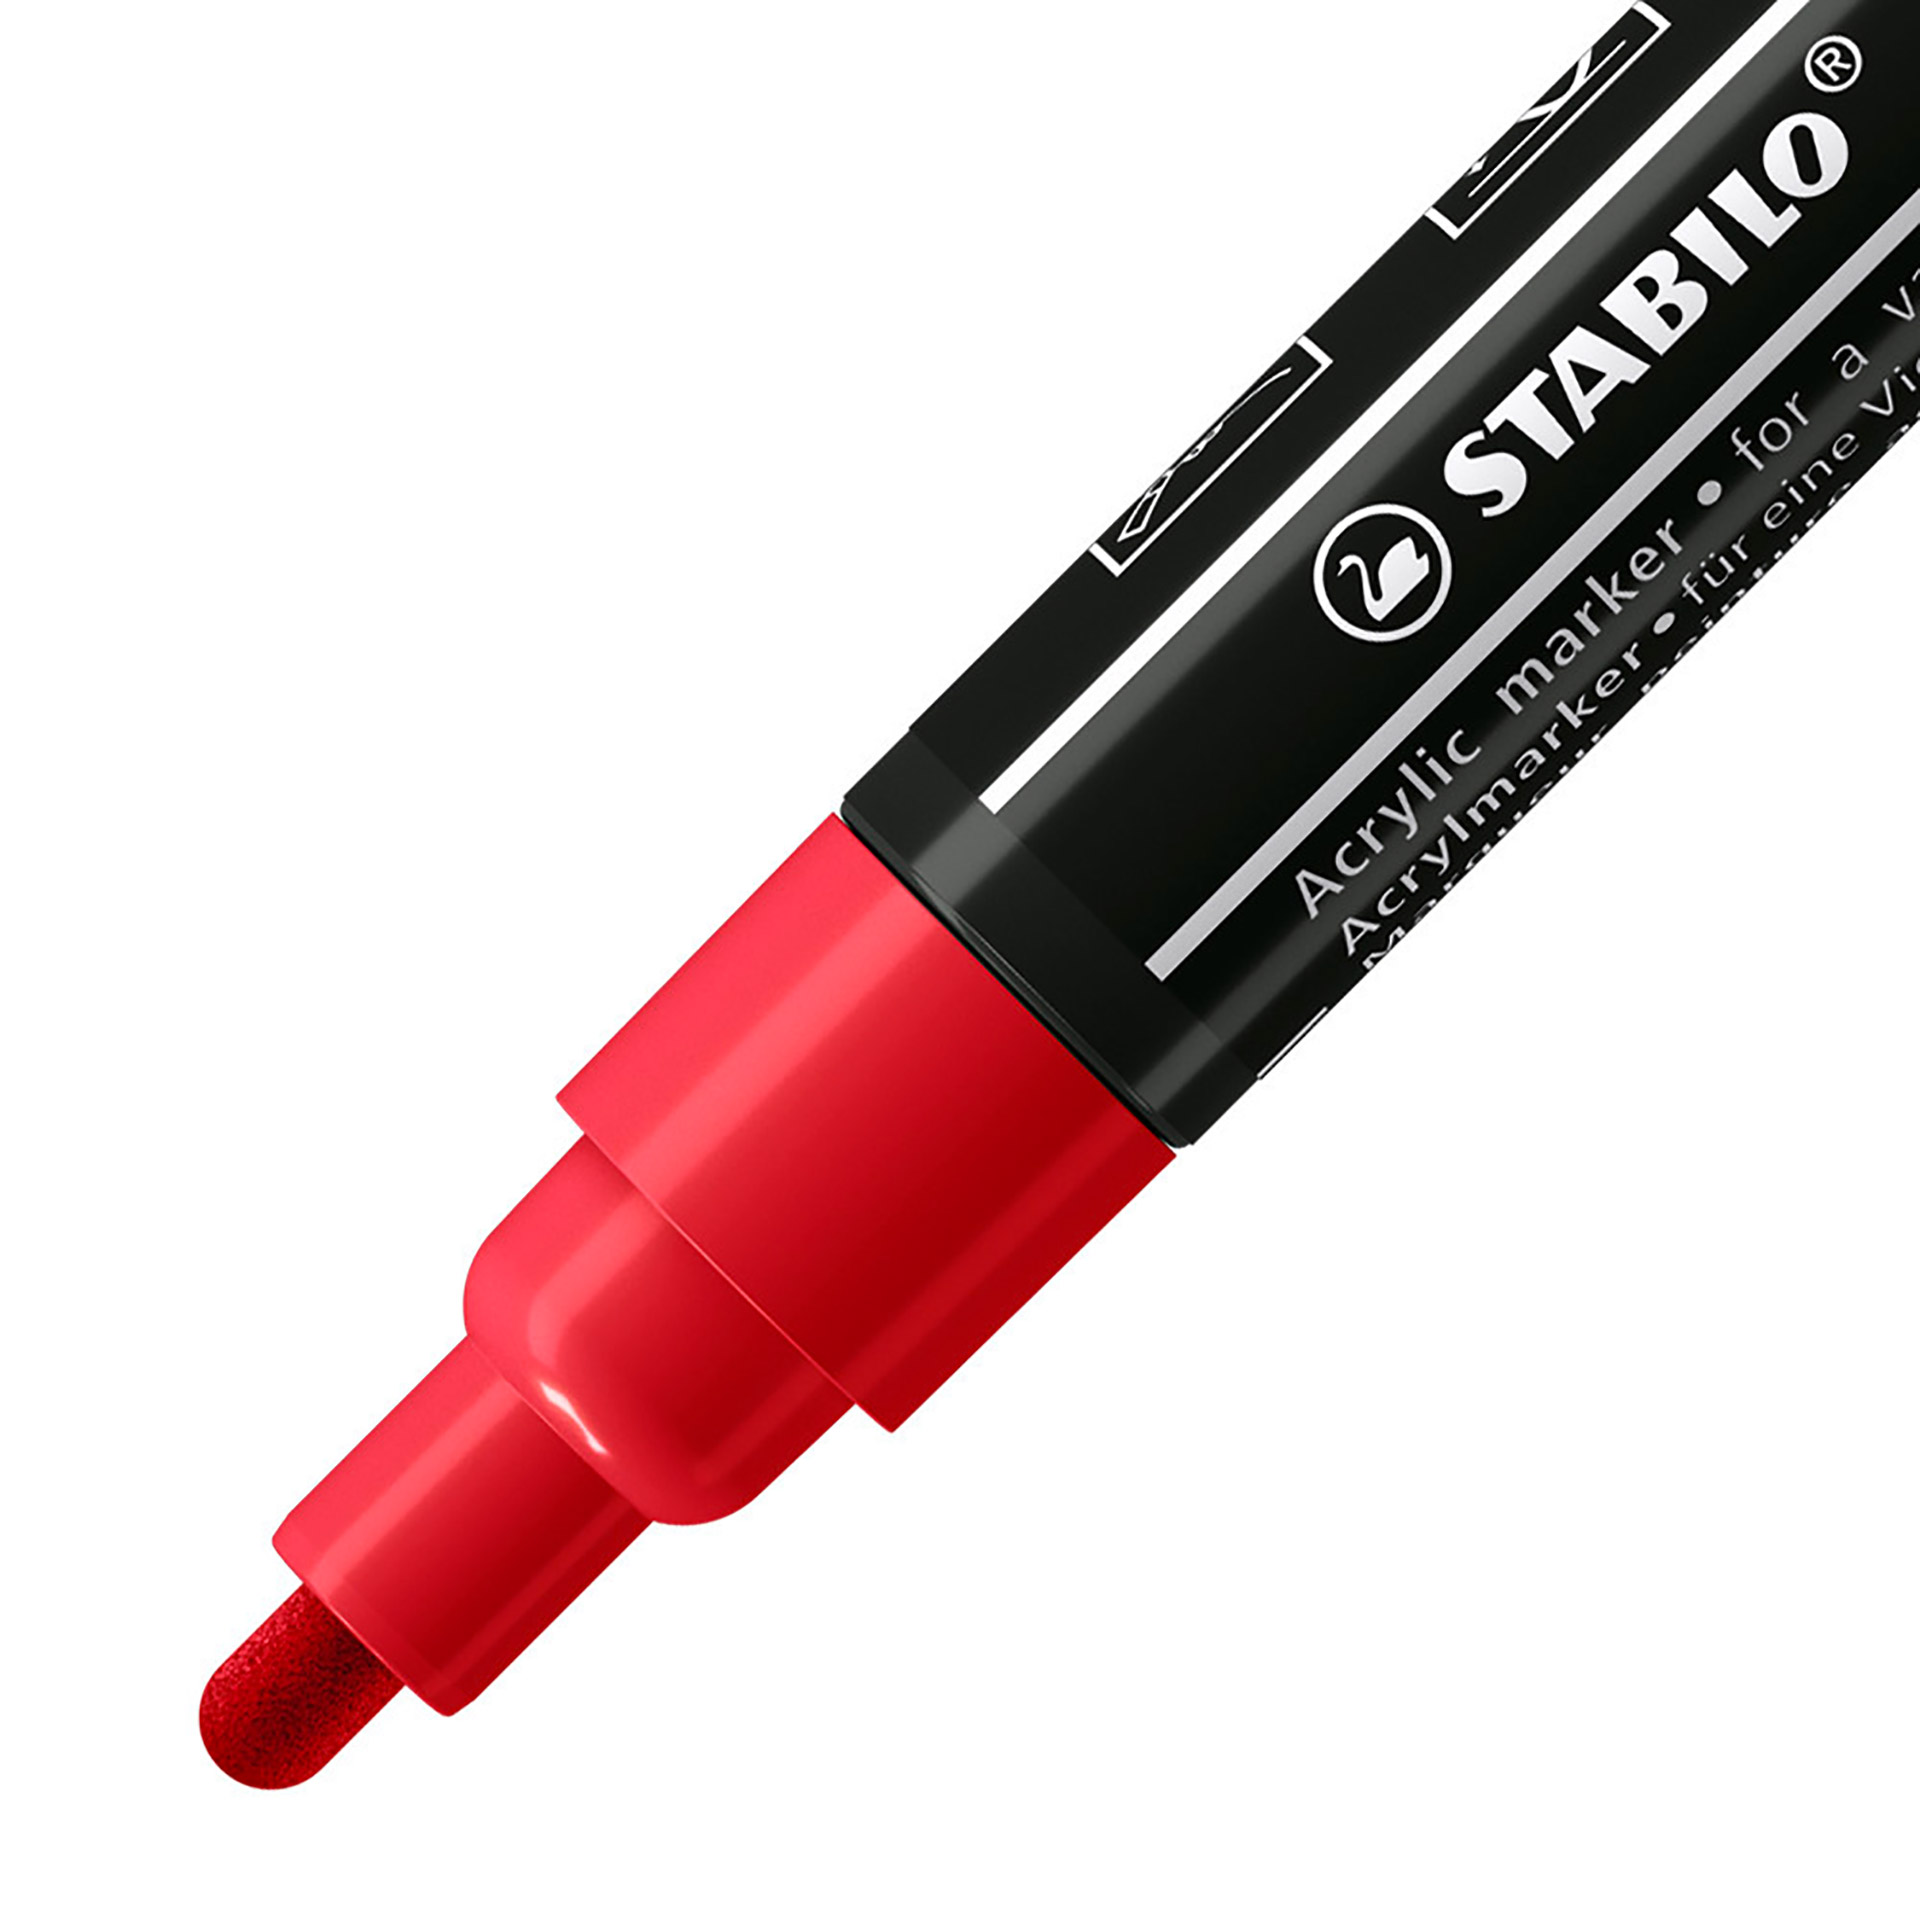 STABILO FREE Acrylic - T300 Punta rotonda 2-3mm - Confezione da 5 - Carminio, , large